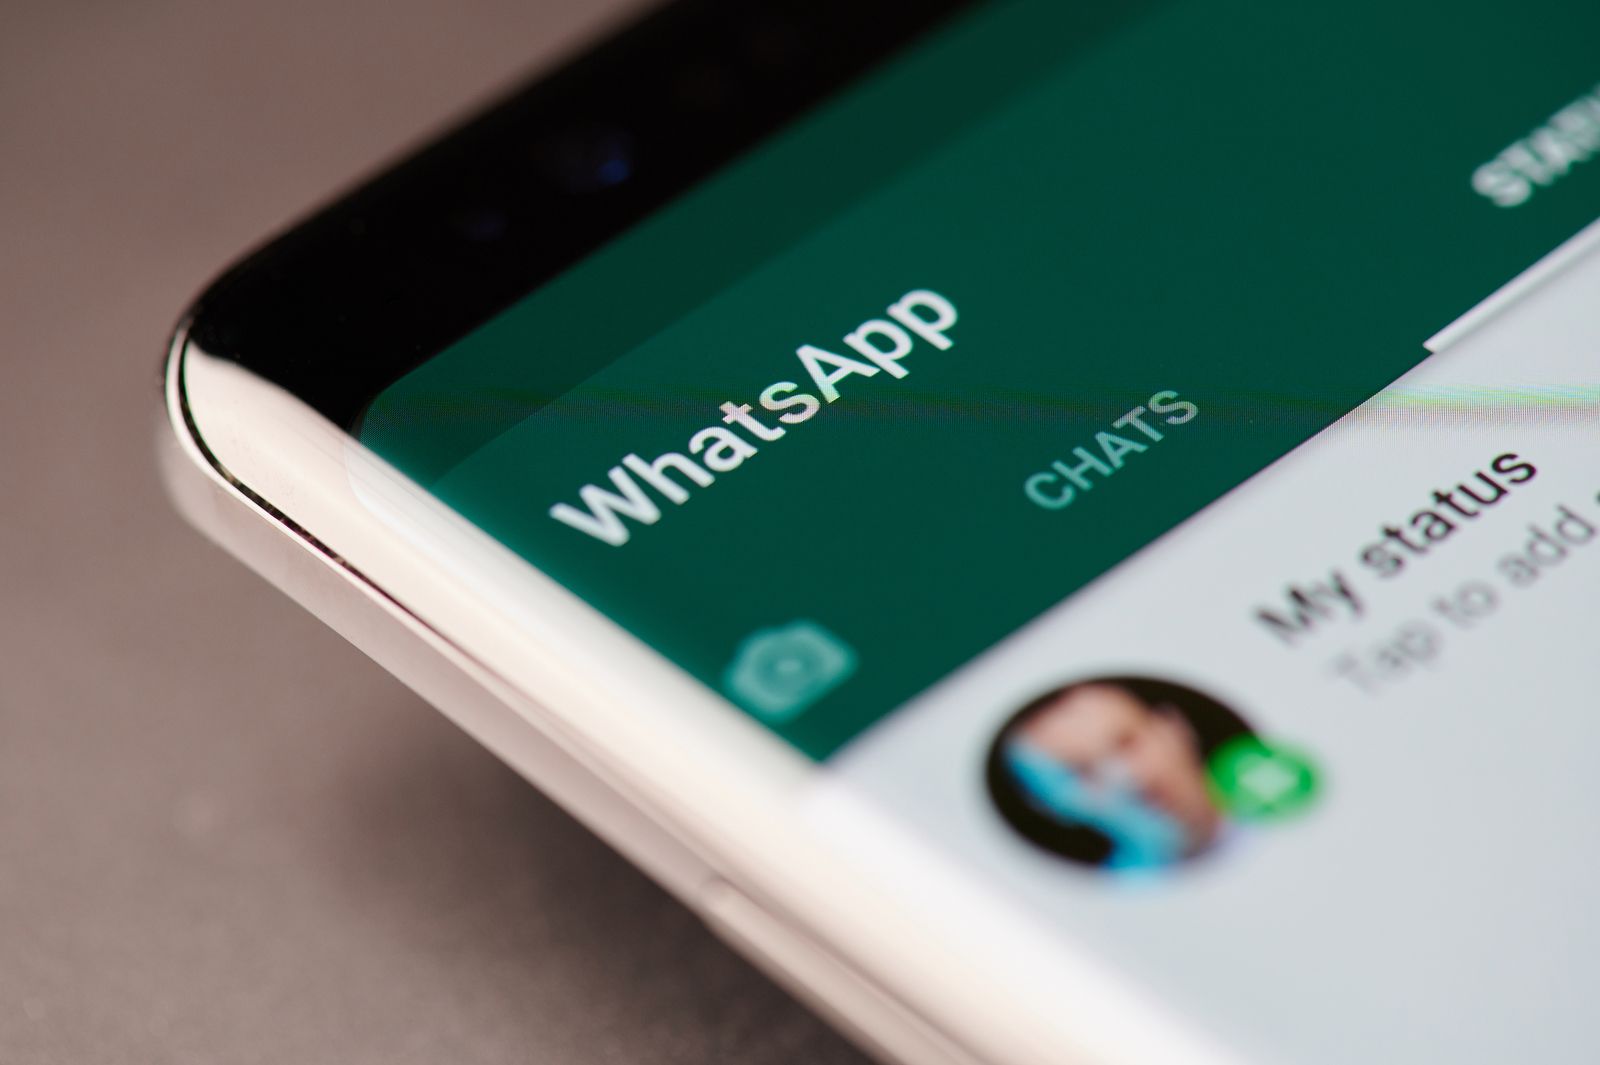 Bloquea los chats de WhatsApp con tu huella